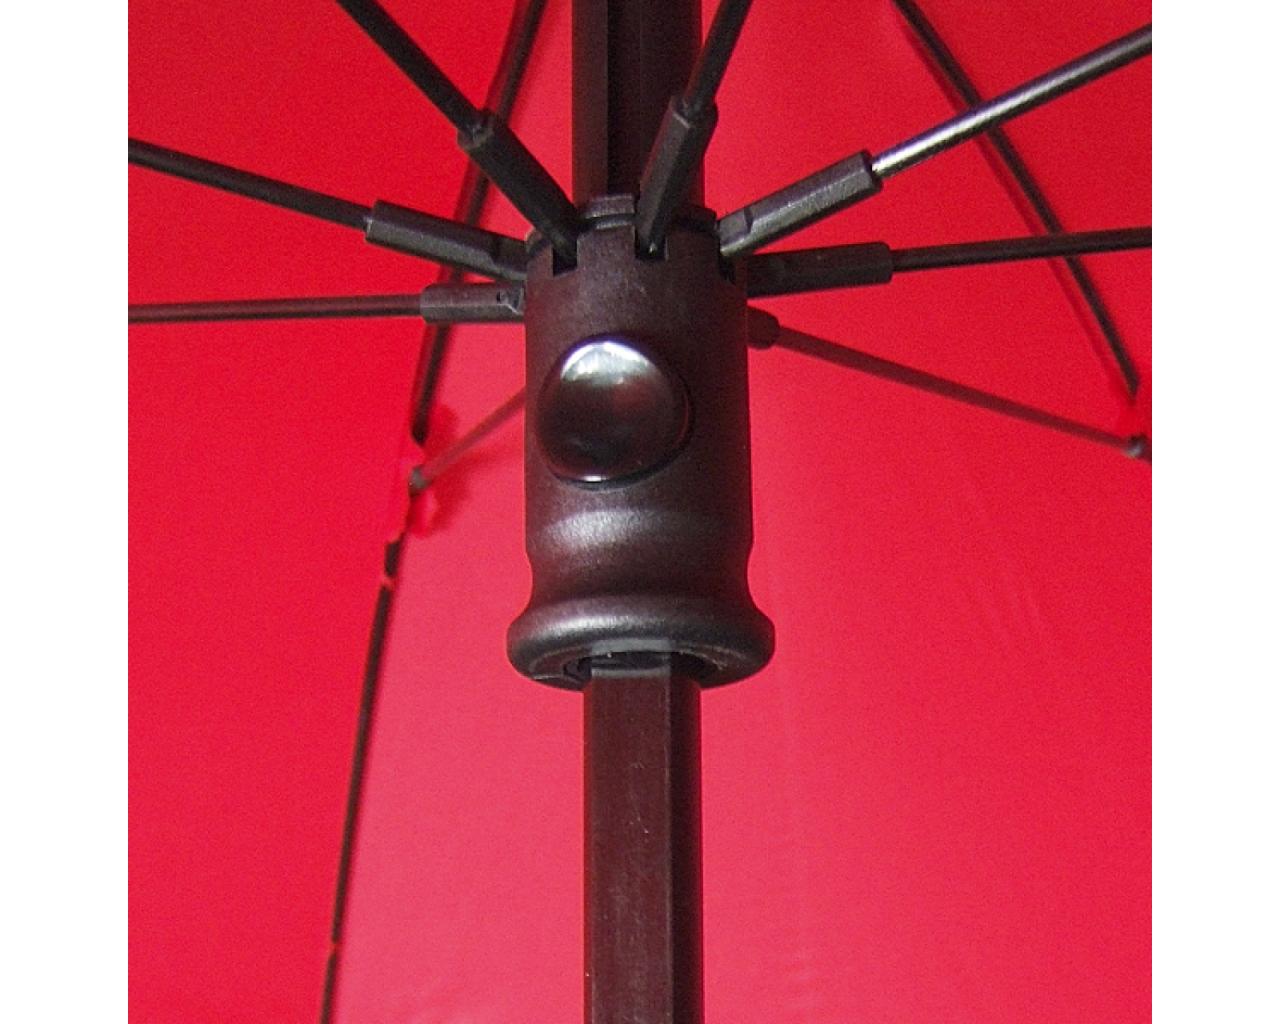 Euroschirm Outdoor Regenschirm Der Birdiepal